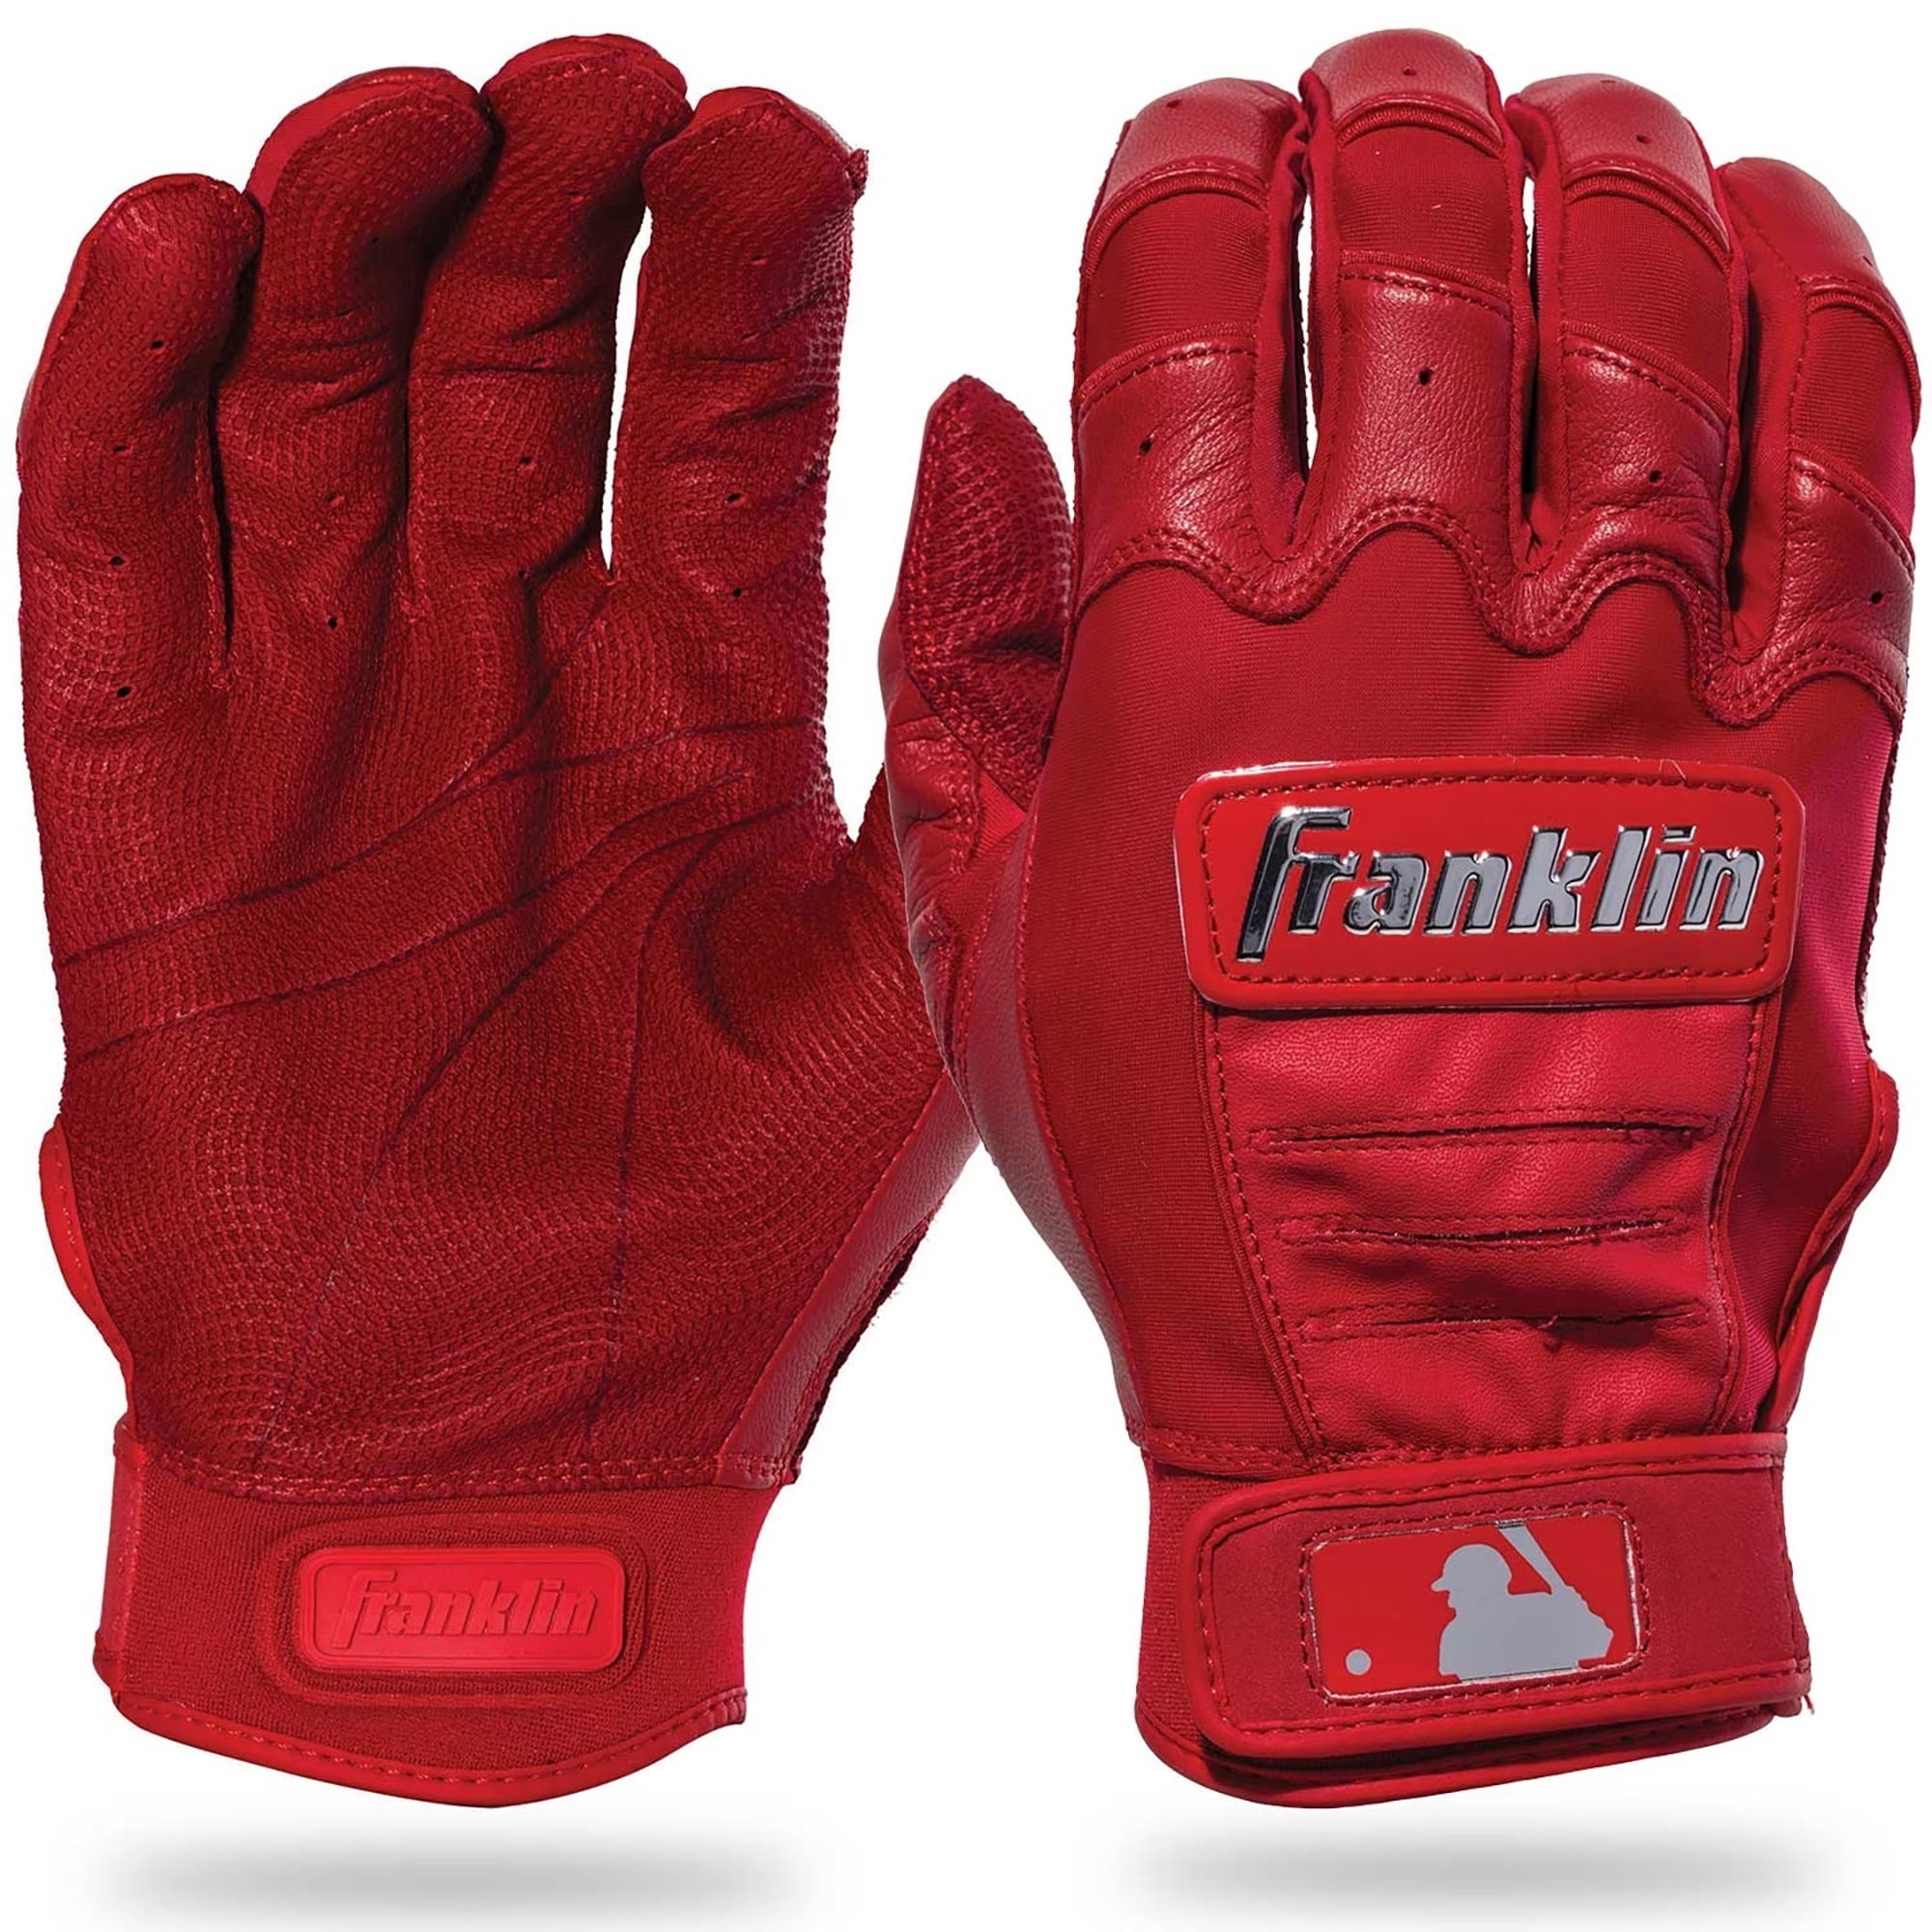 Buy Supreme Franklin CFX Pro Batting Gloves (Red) Online - Waves